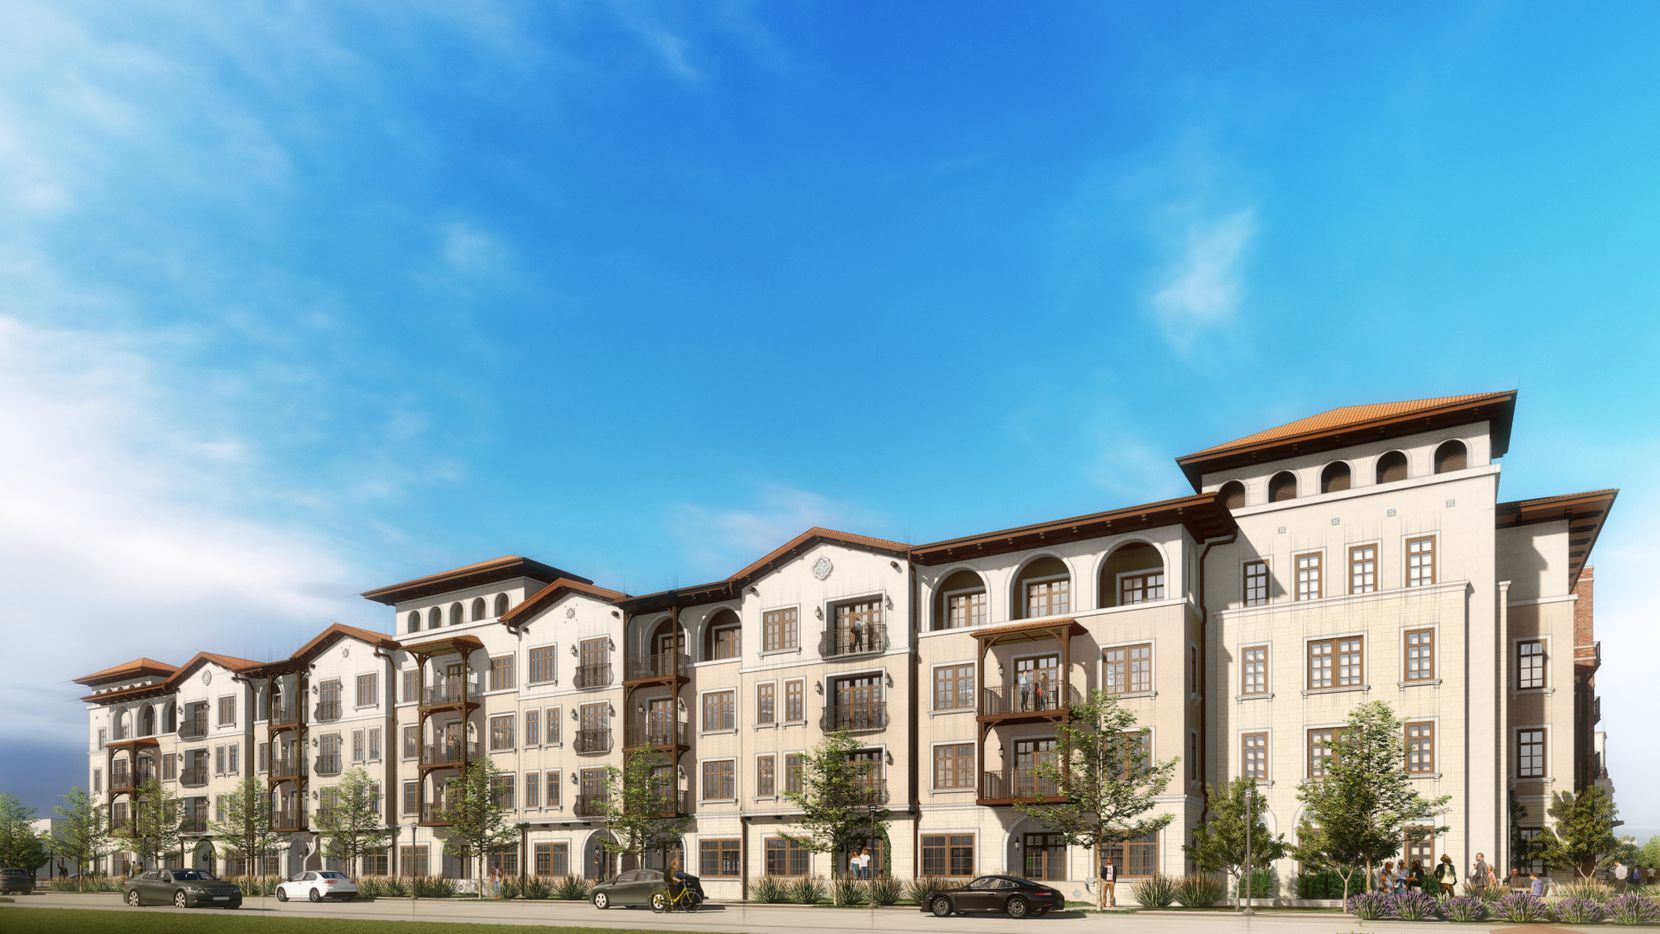 Presidium Set to Build New Apartment Community in Dallas Dallas Express